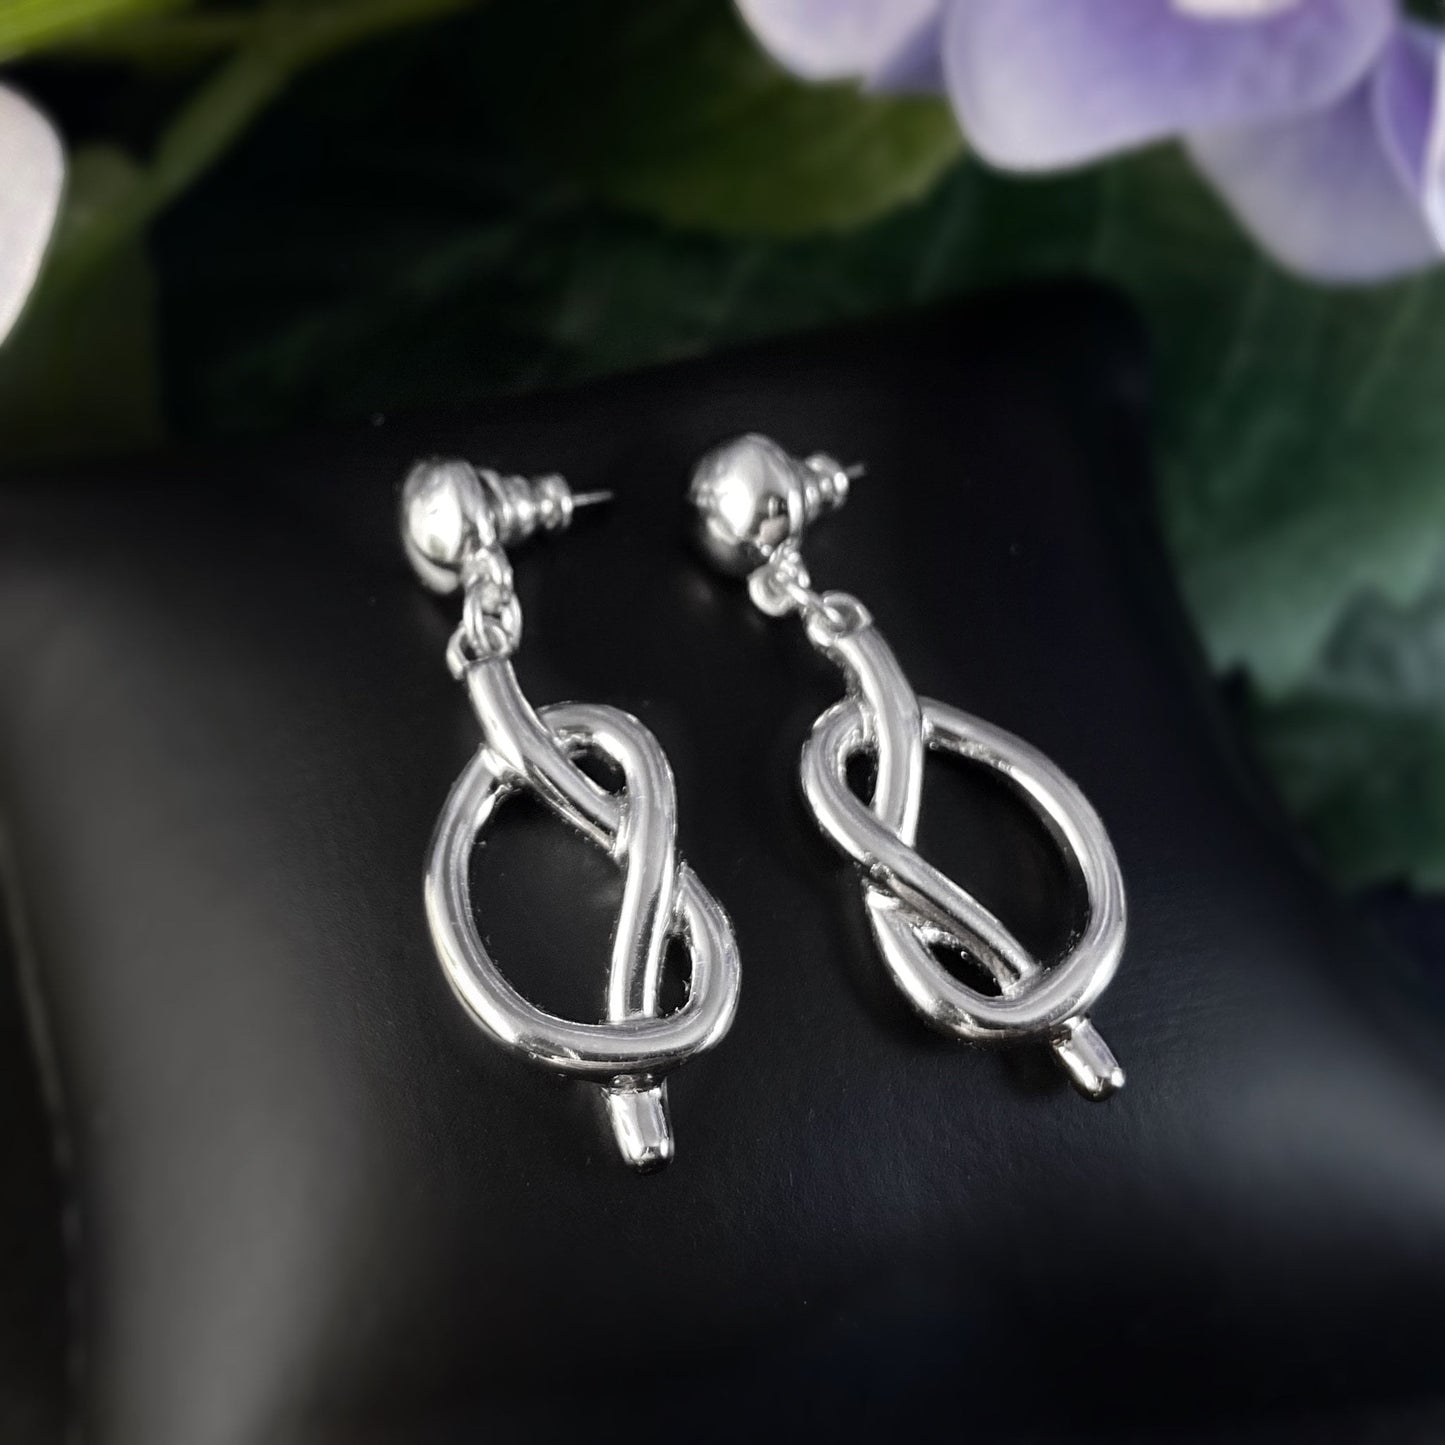 Silver Pretzel Earrings - Handmade Nickel Free Ulla Jewelry